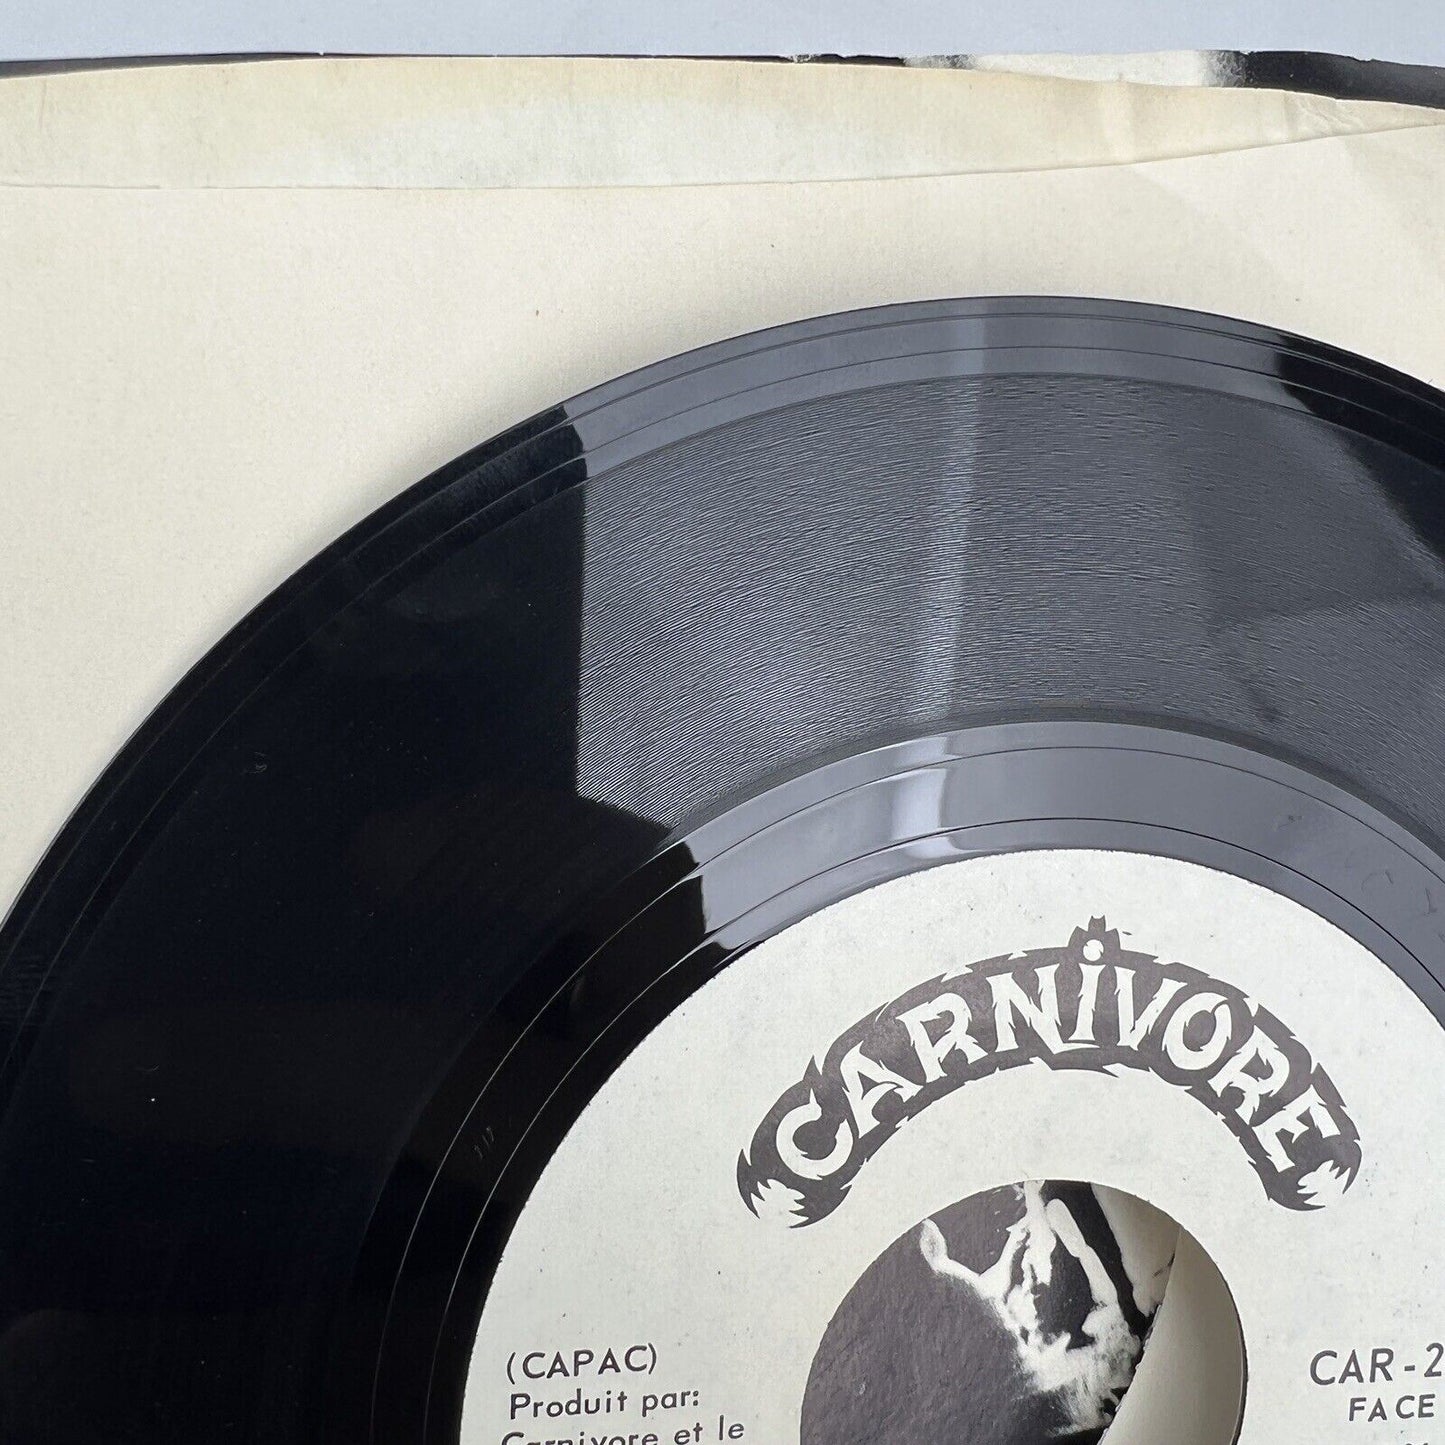 RARE Canada Punk 45 Vinyl CARNIVORE Du Bon Poulet / Y’ont Vite Non 1980 CAR-2001